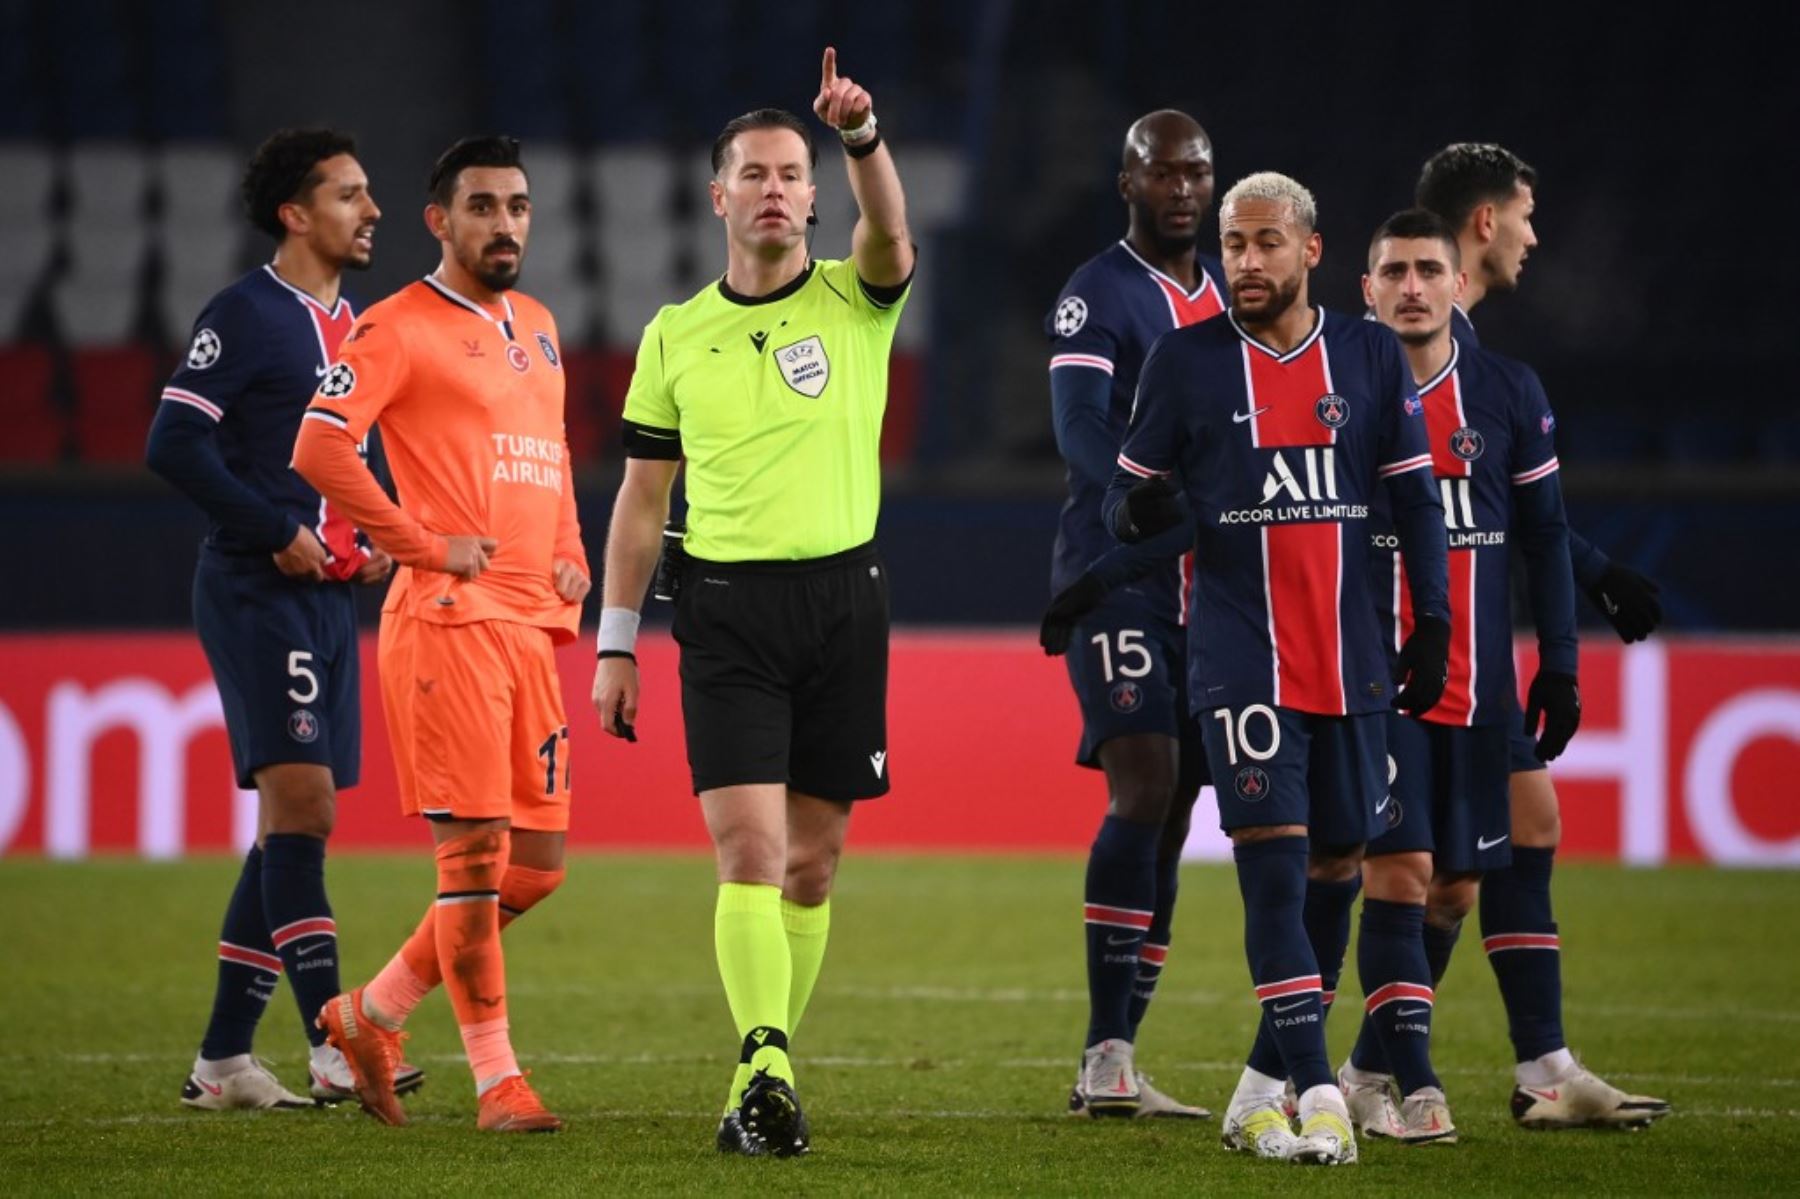 Danny Makkelie se arrodilló junto a los jugadores del Paris Saint-Germain y el Basaksehir de Estambul